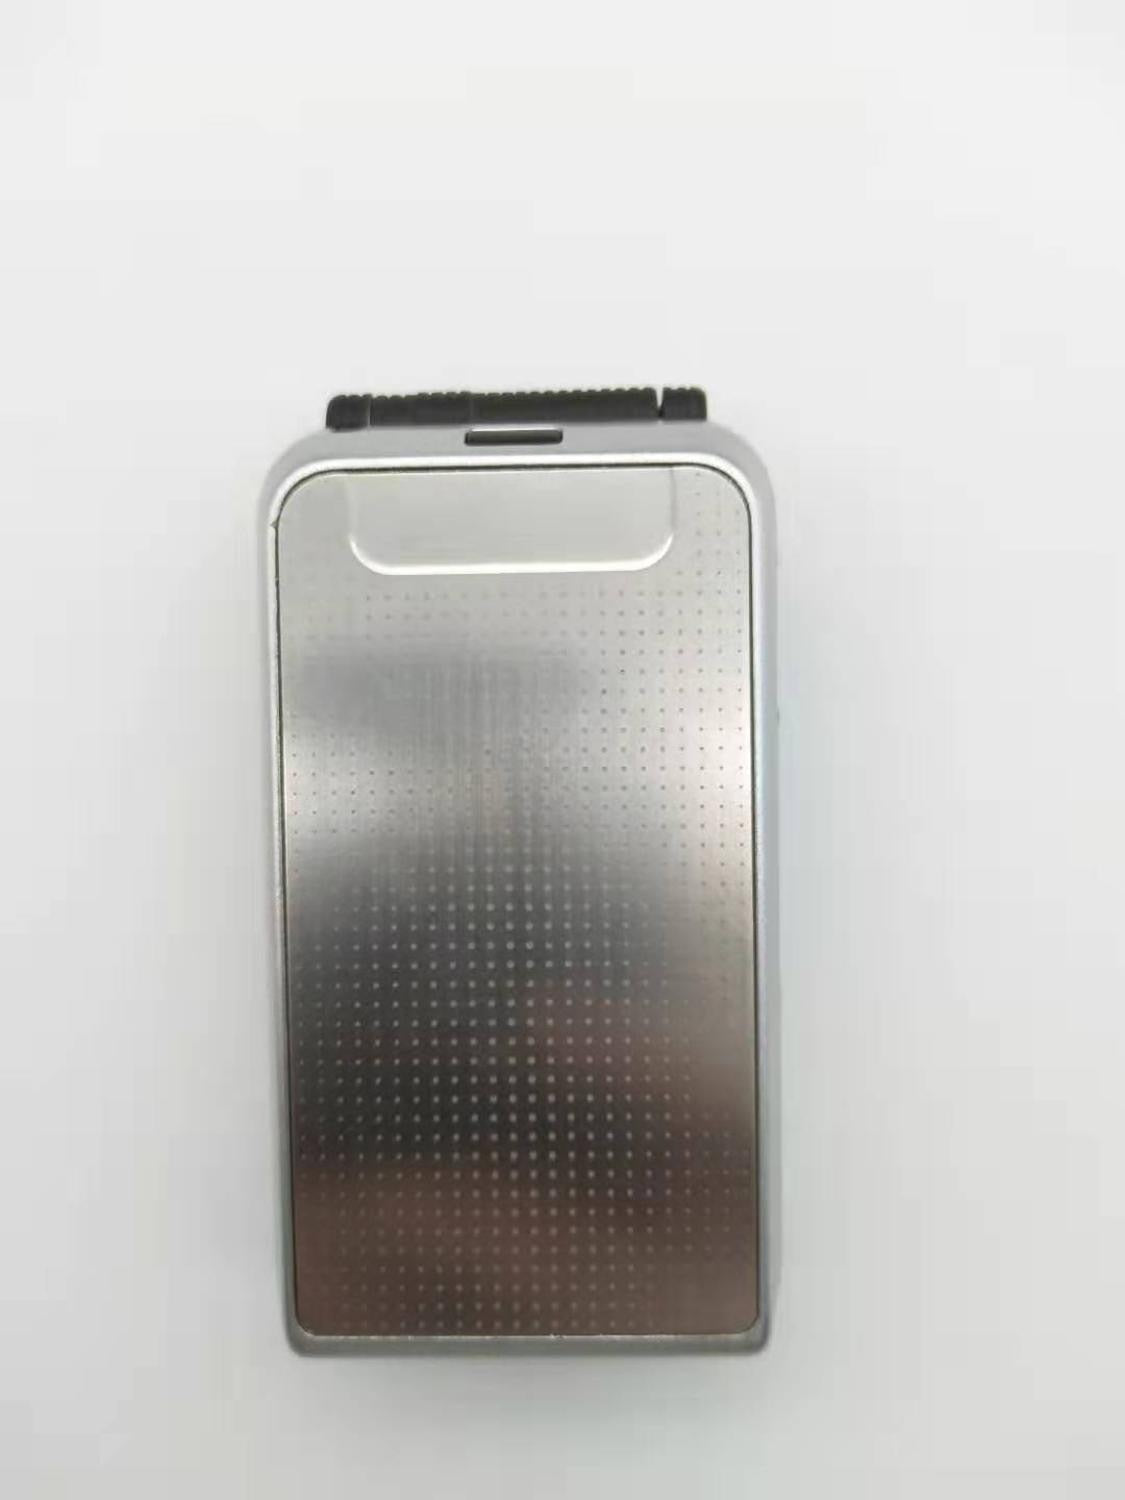 Nokia 6170 Original Flip Phone GSM 2G